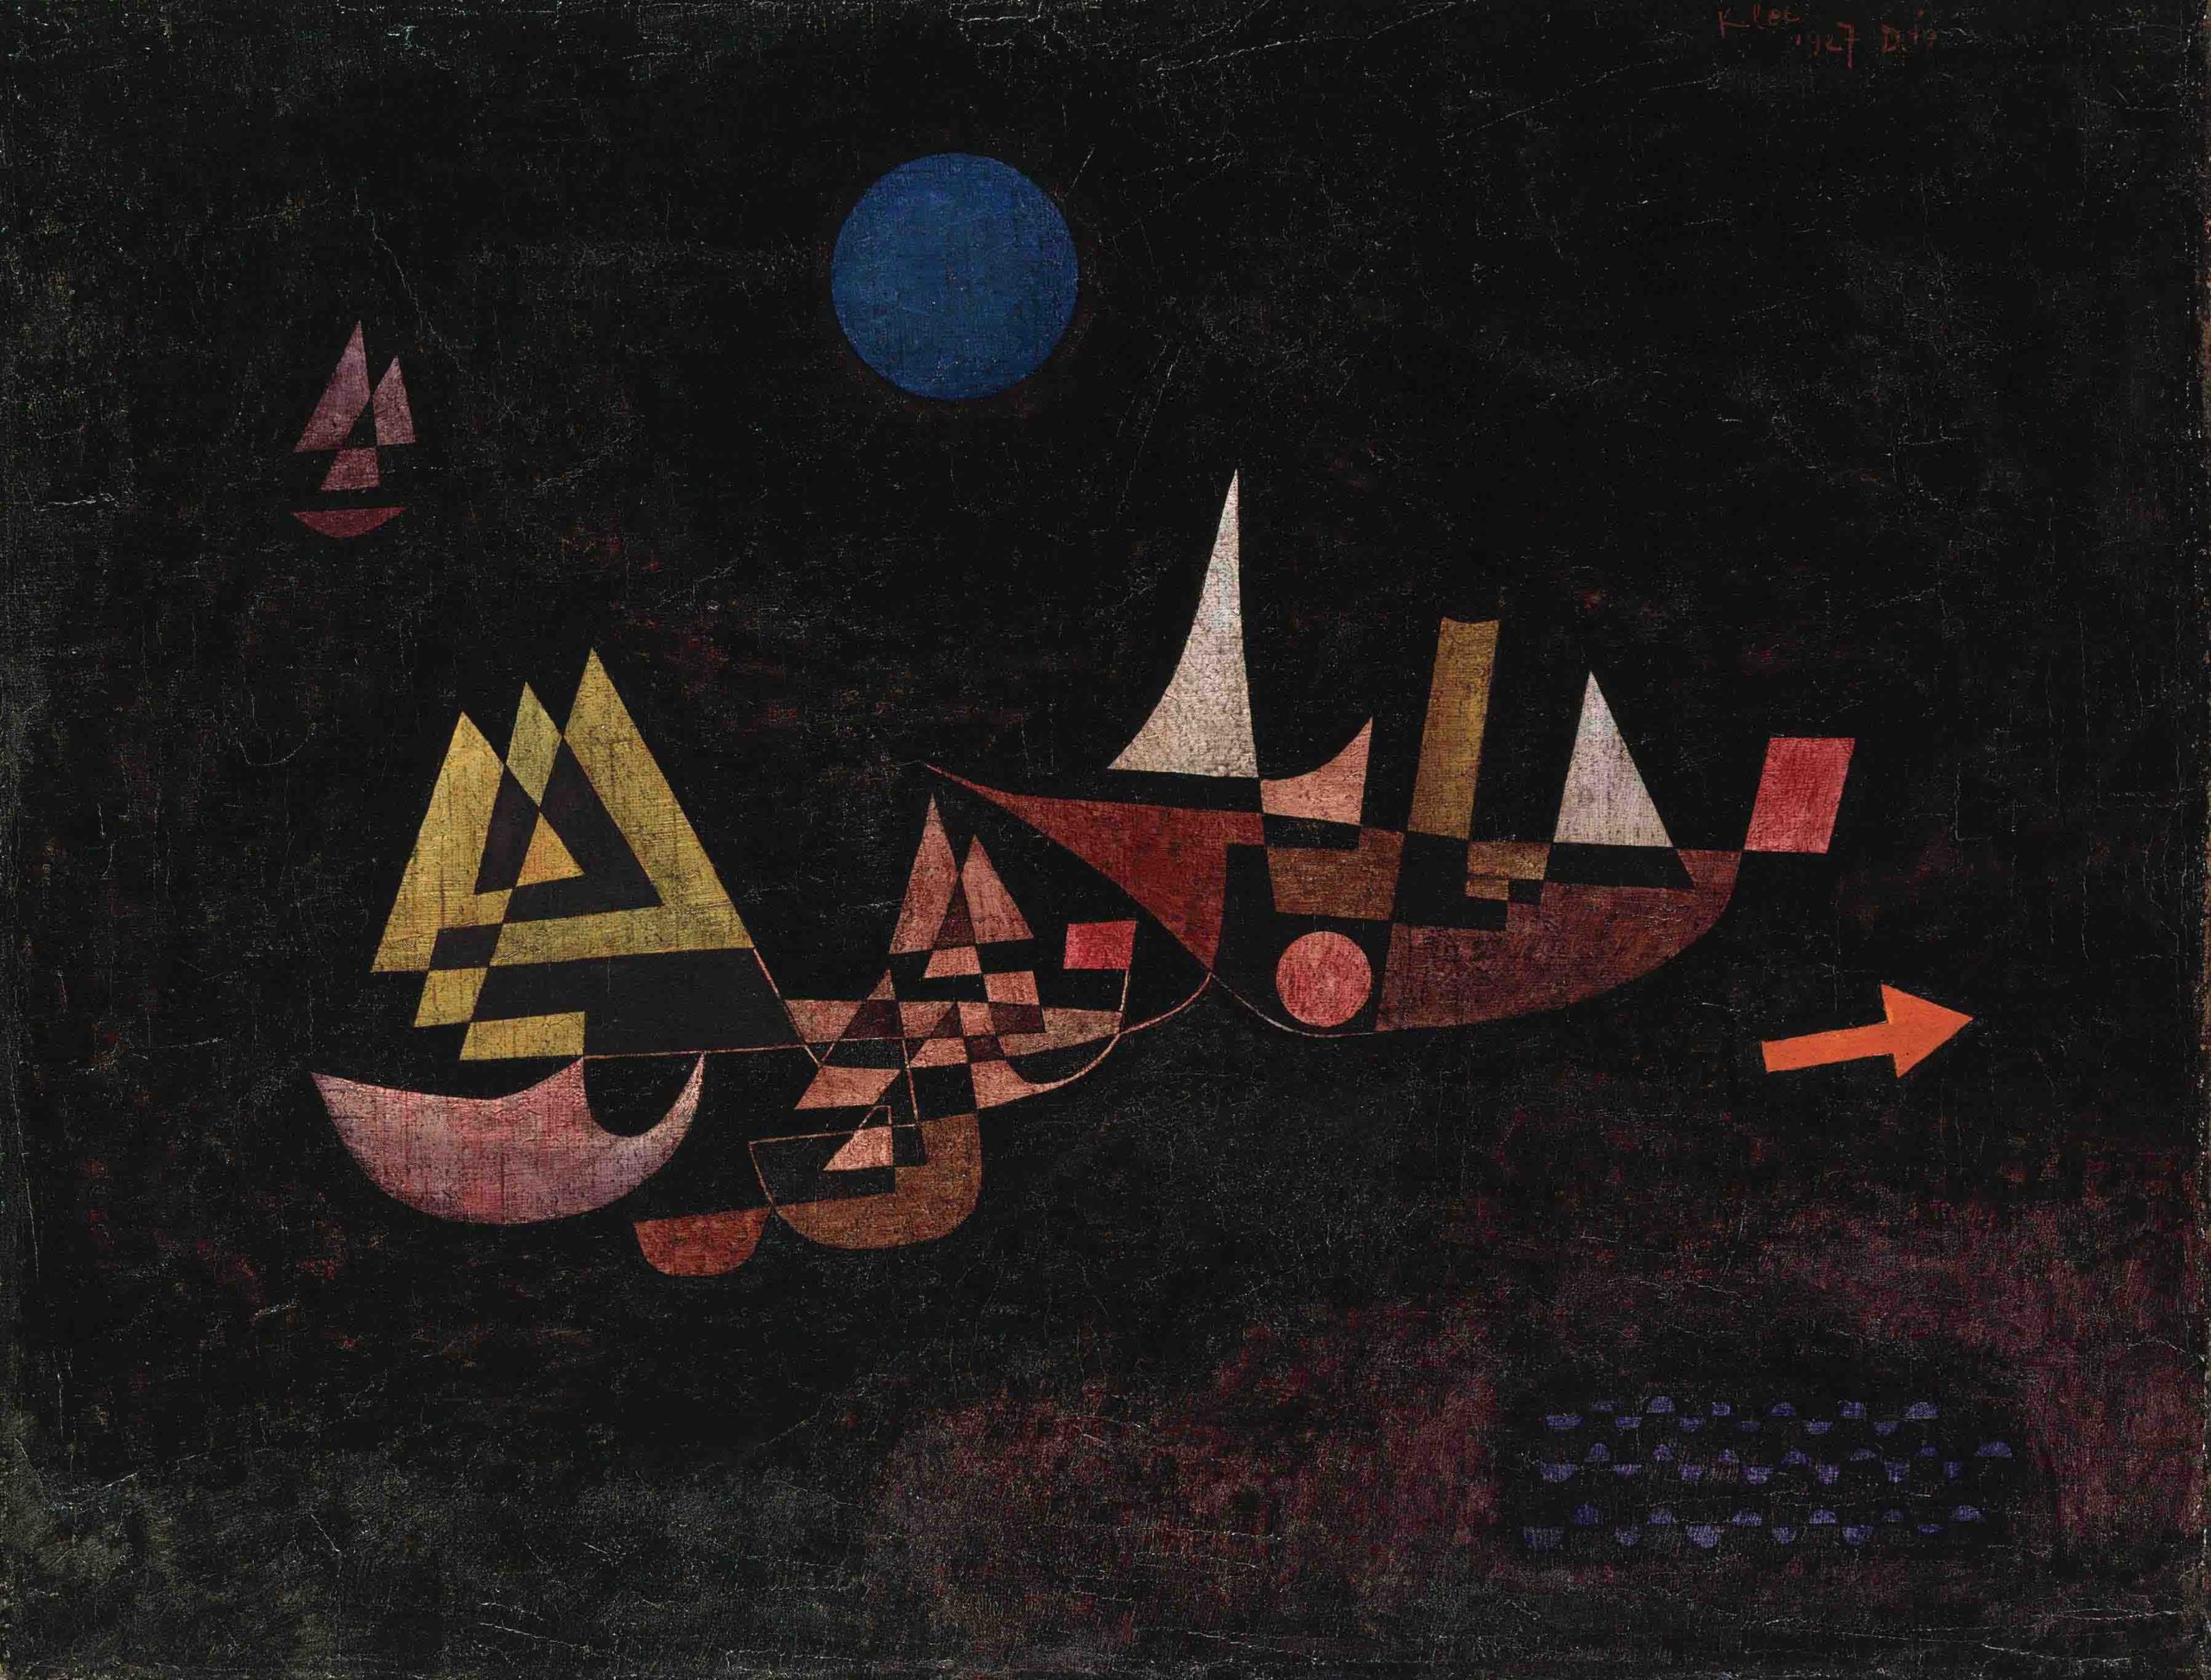 Paul Klee, Abfahrt der Schiffe, 1927.